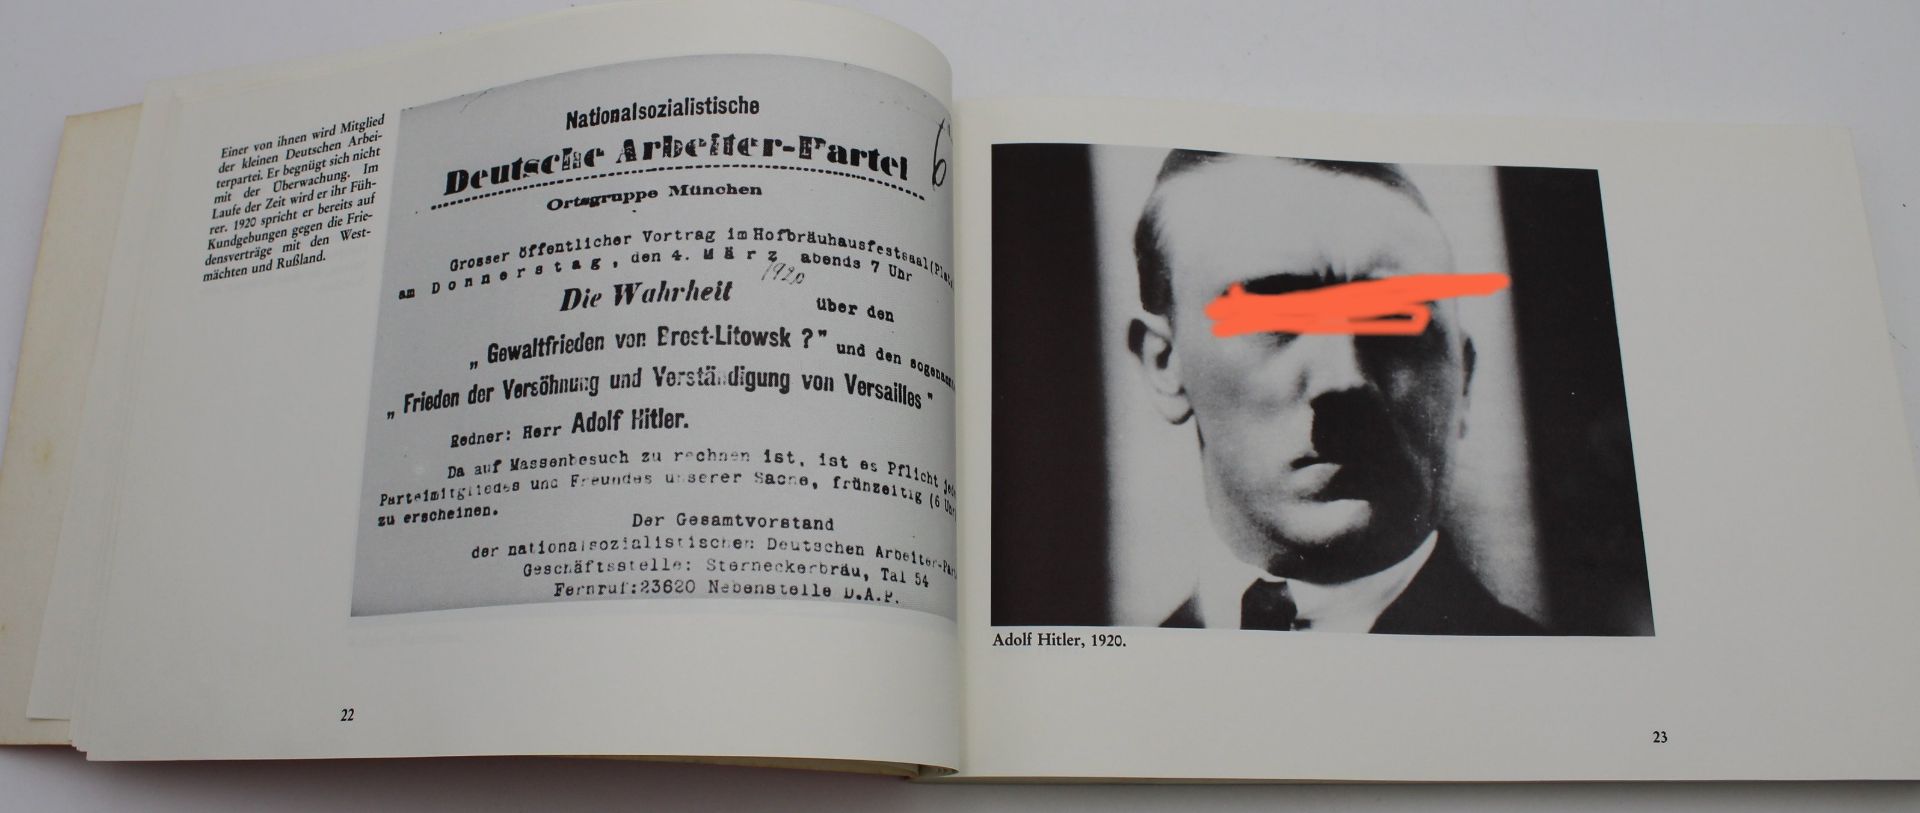 Erwin Leiser's Film "Mein Kampf" - Eine Bilddokumentation der Jahre 1914-1945, 1. Auflage 1976 - Bild 4 aus 5